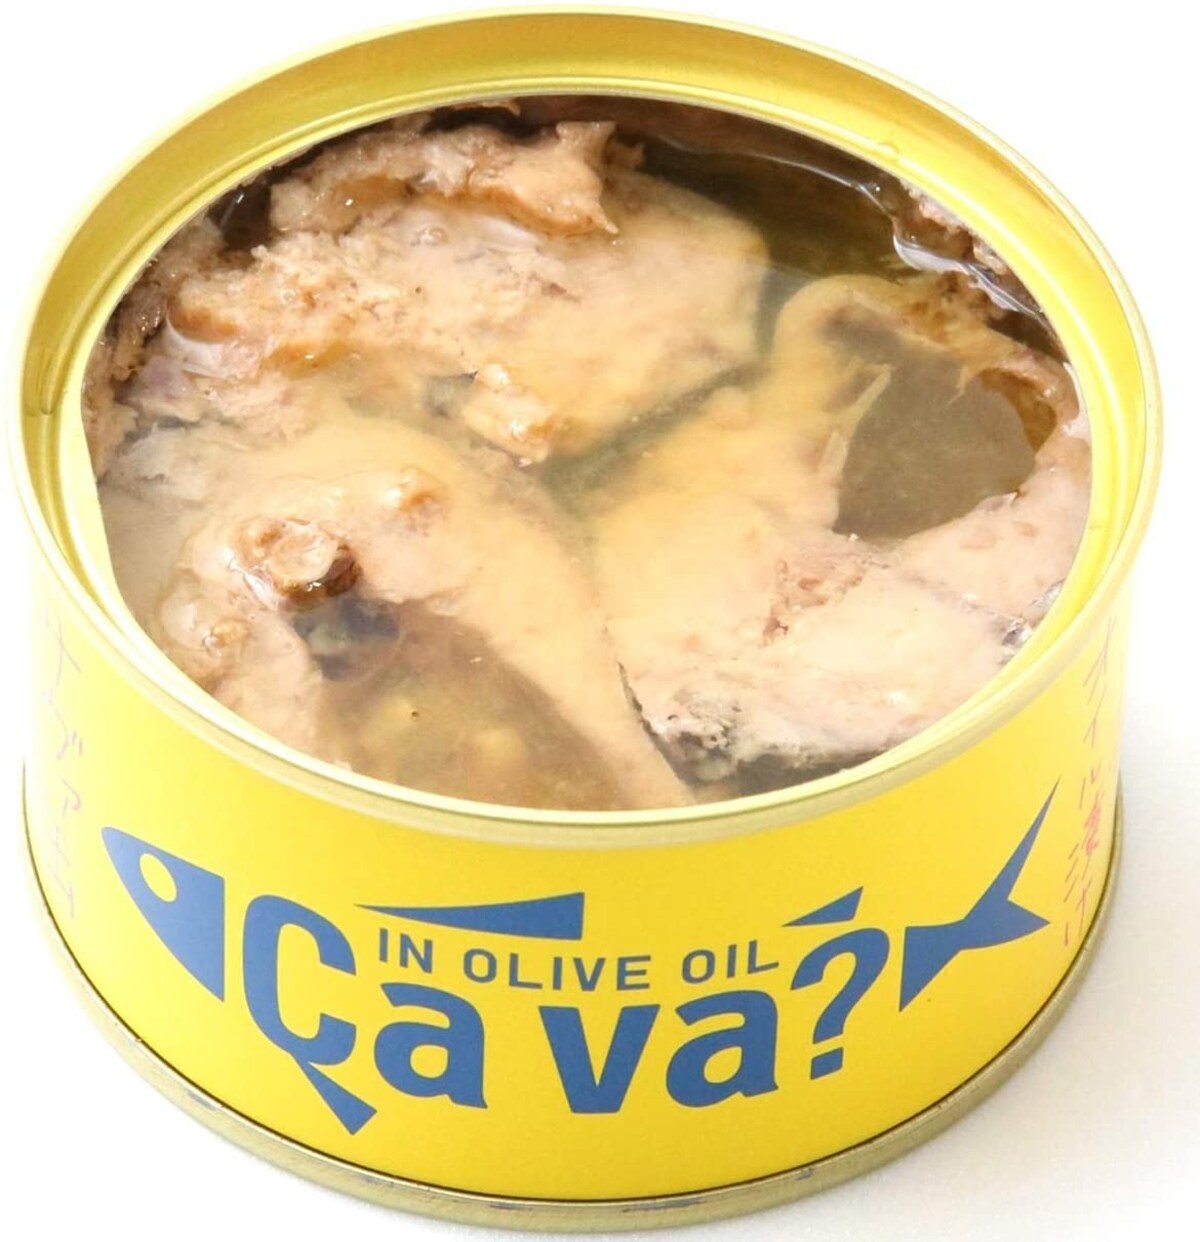  サヴァ缶 国産サバのオリーブオイル漬け画像2 